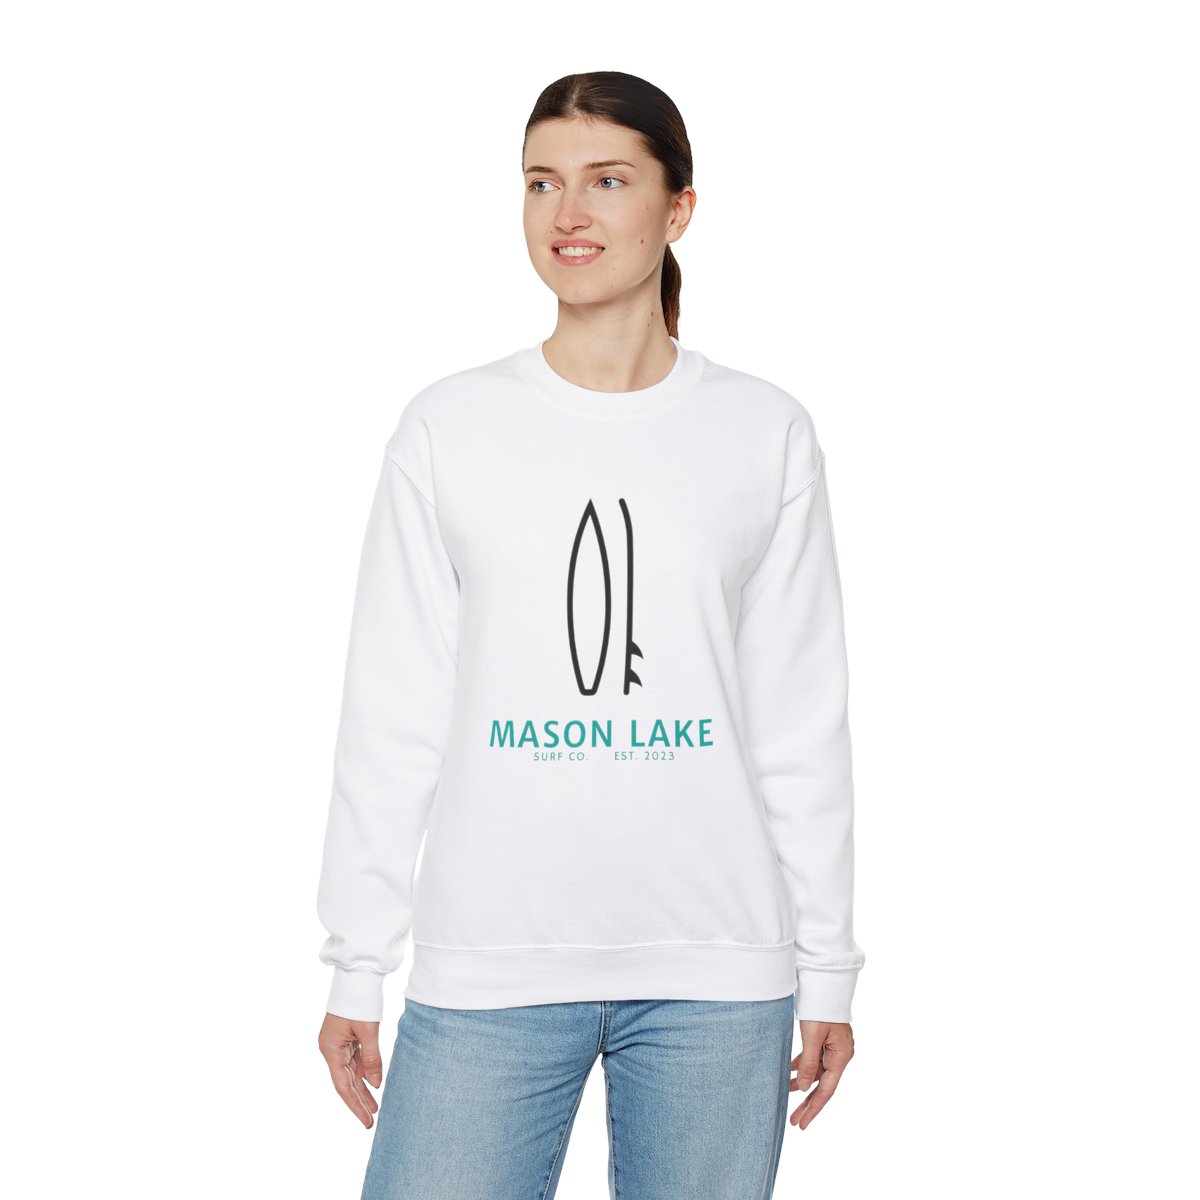 Mason Lake Surf Club Crew neck sweatshirt product thumbnail image